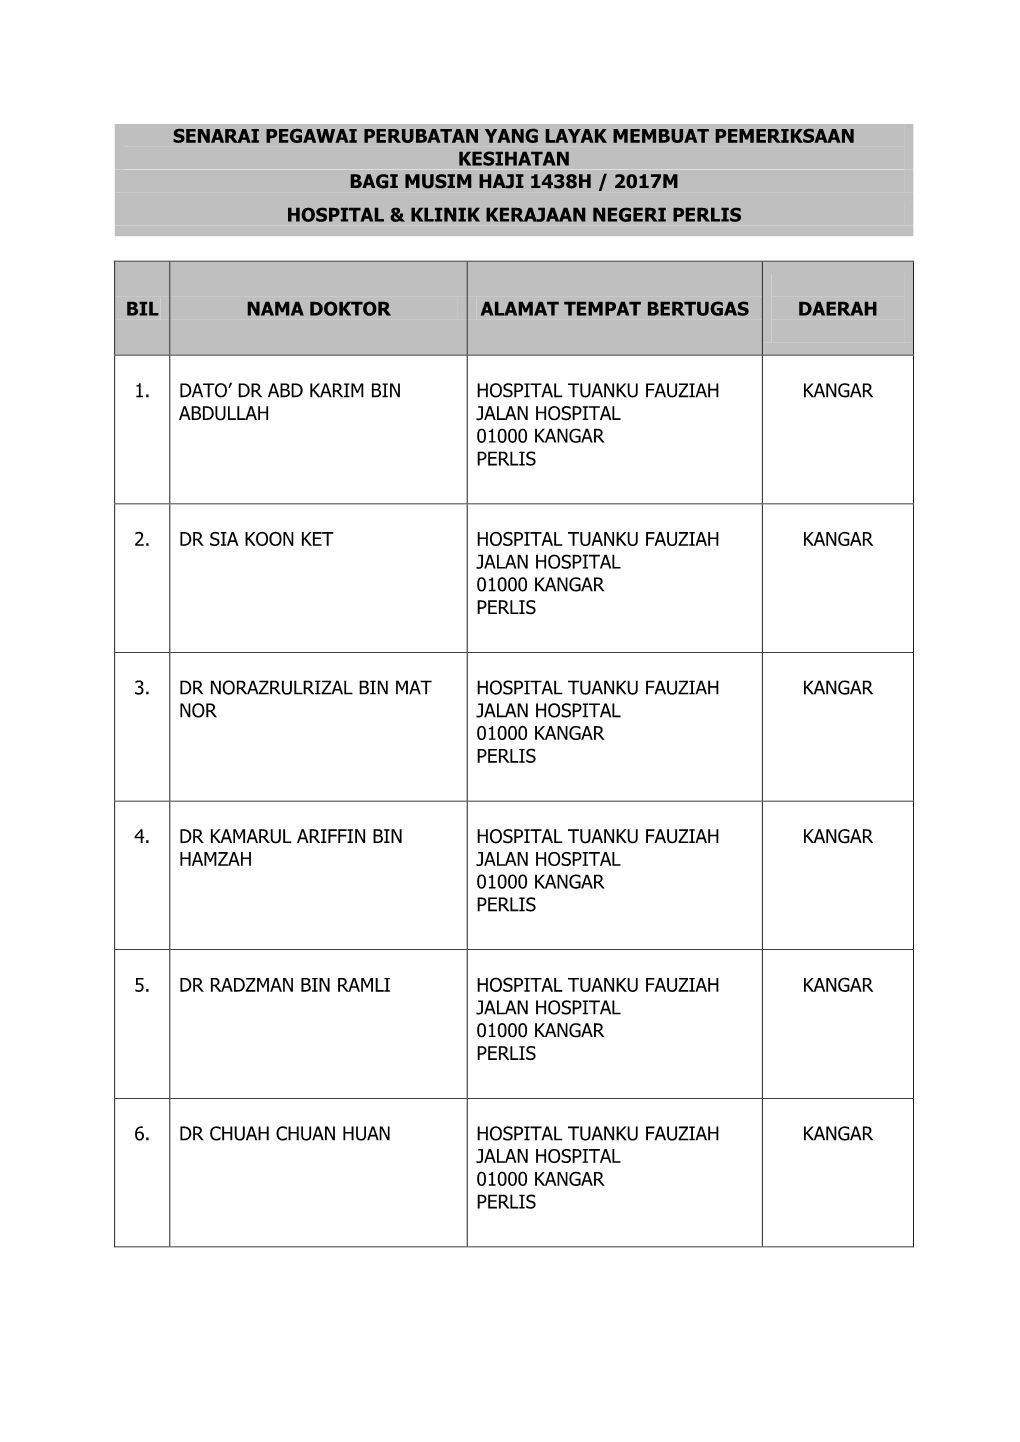 Senarai Pegawai Perubatan Yang Layak Membuat Pemeriksaan Kesihatan Bagi Musim Haji 1438H / 2017M Hospital & Klinik Kerajaan Negeri Perlis